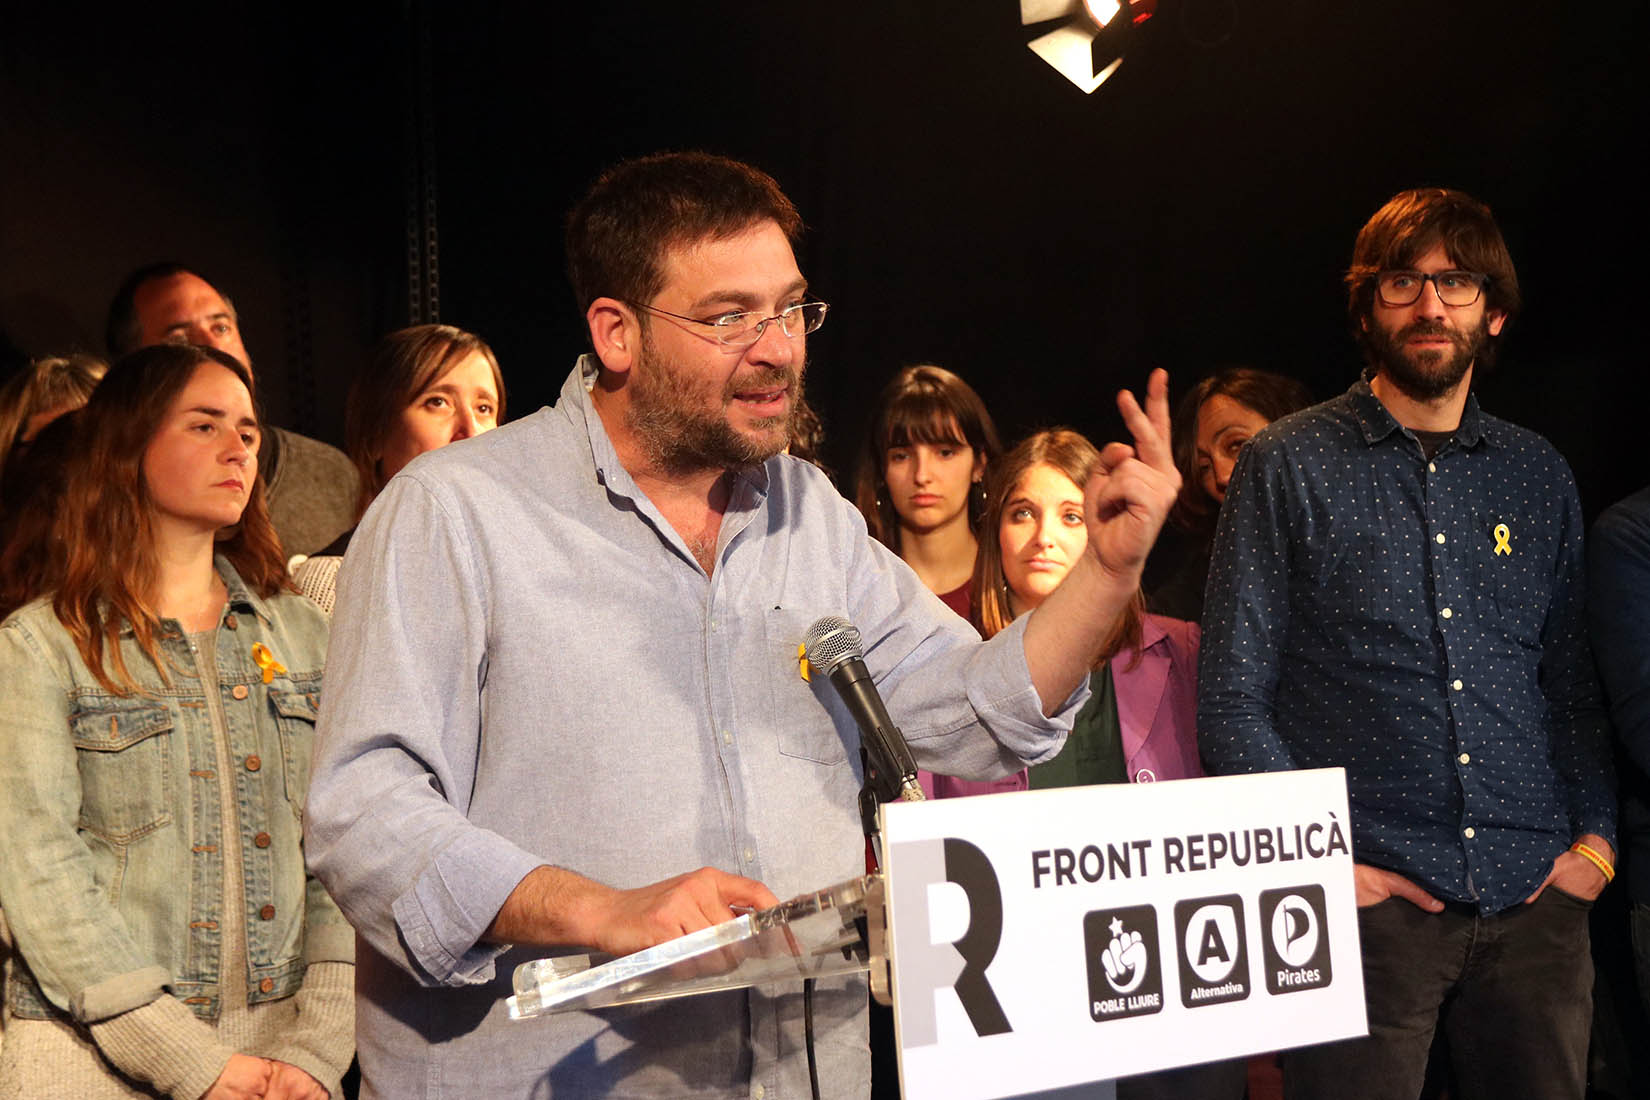 El cap de llista del Front Republicà per Barcelona a les eleccions espanyoles, Albano-Dante Fachin